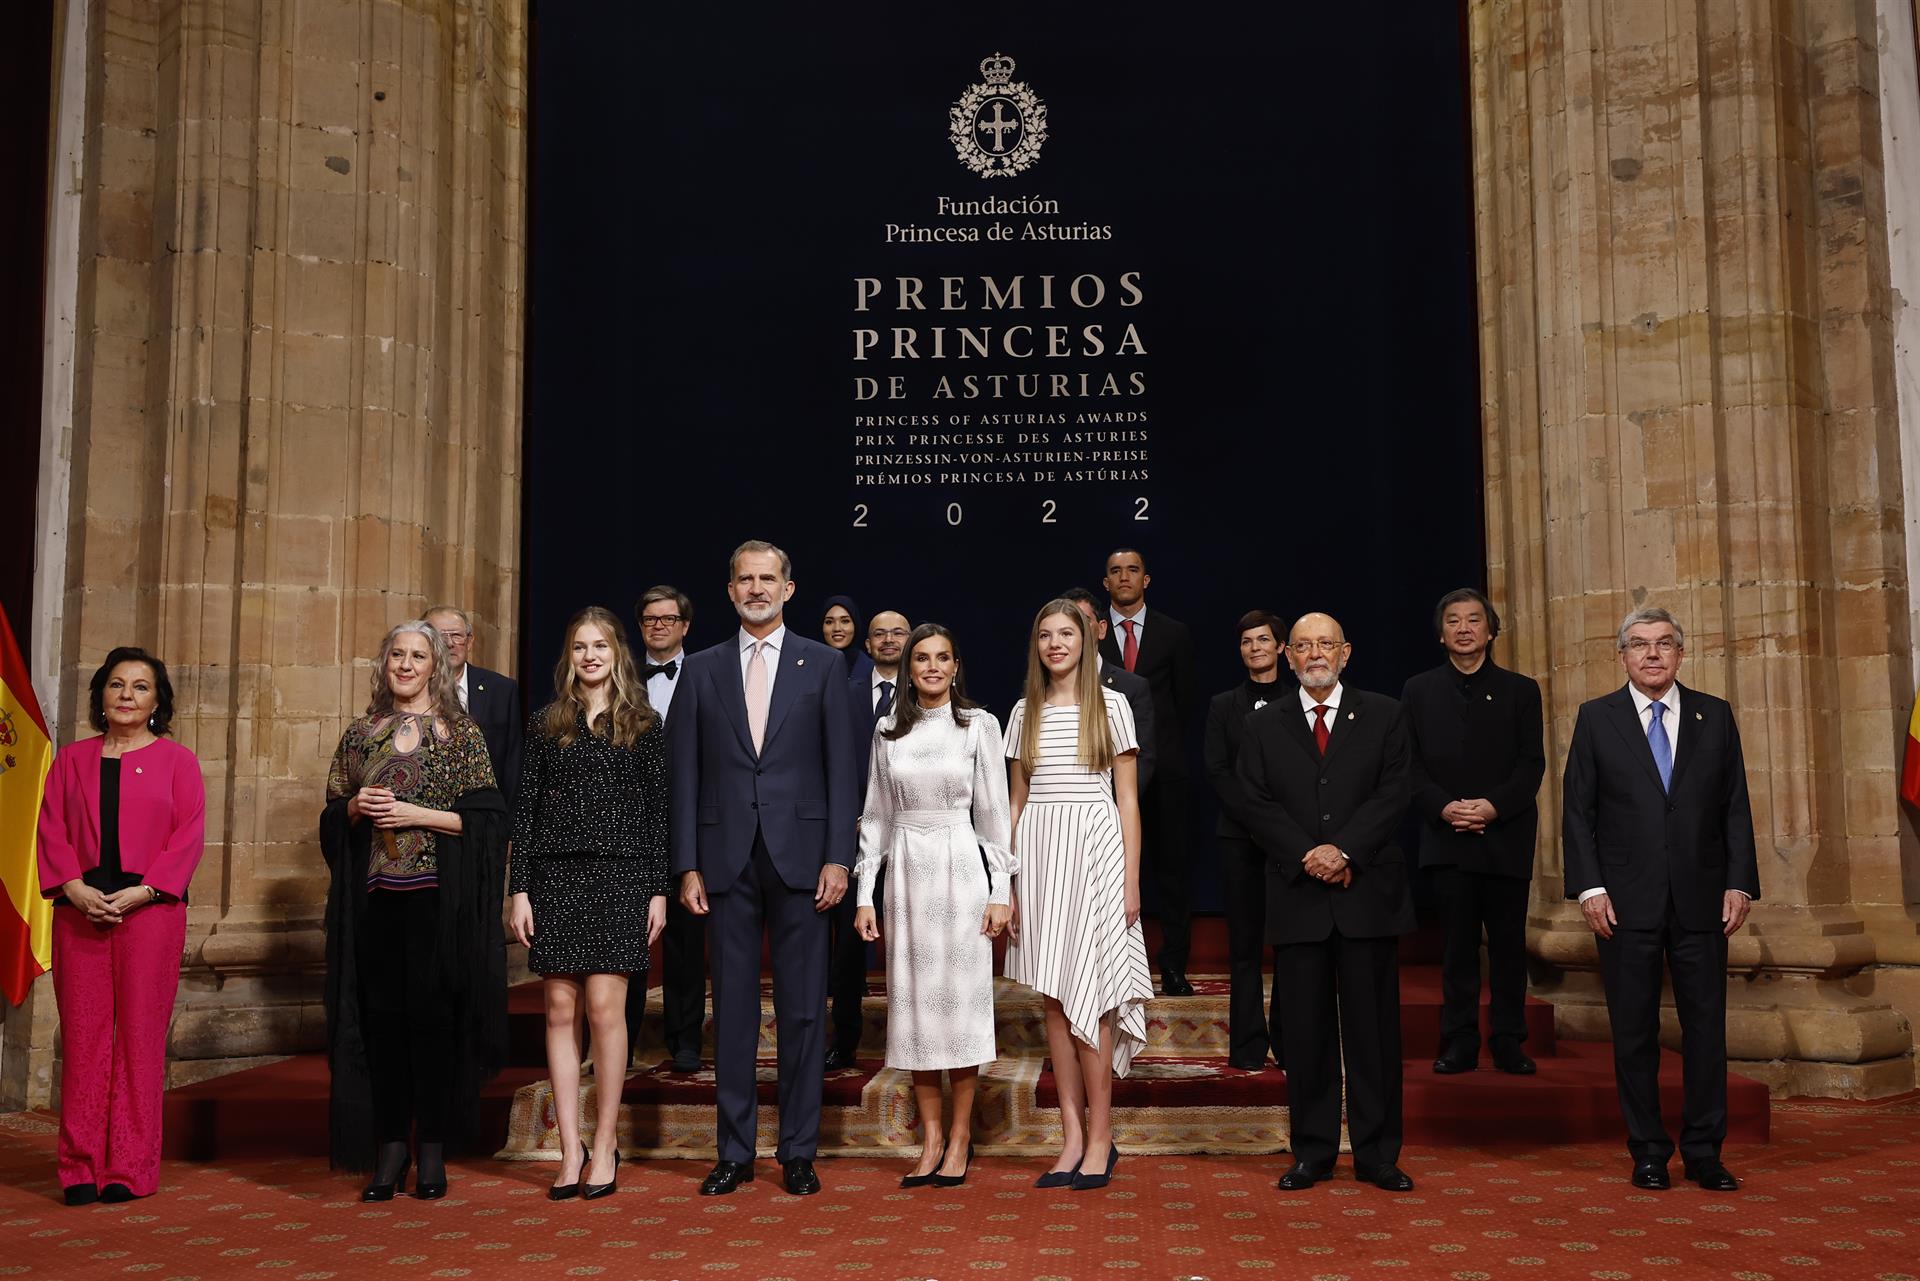 OVIEDO, 28/10/2022.- Los reyes Felipe y Letizia, acompañados de la princesa Leonor y la infanta Sofía, posan con los galardonados con los Premios Princesa de Asturia, antes de la entrega este viernes de los Premios en Oviedo. EFE/ Ballesteros